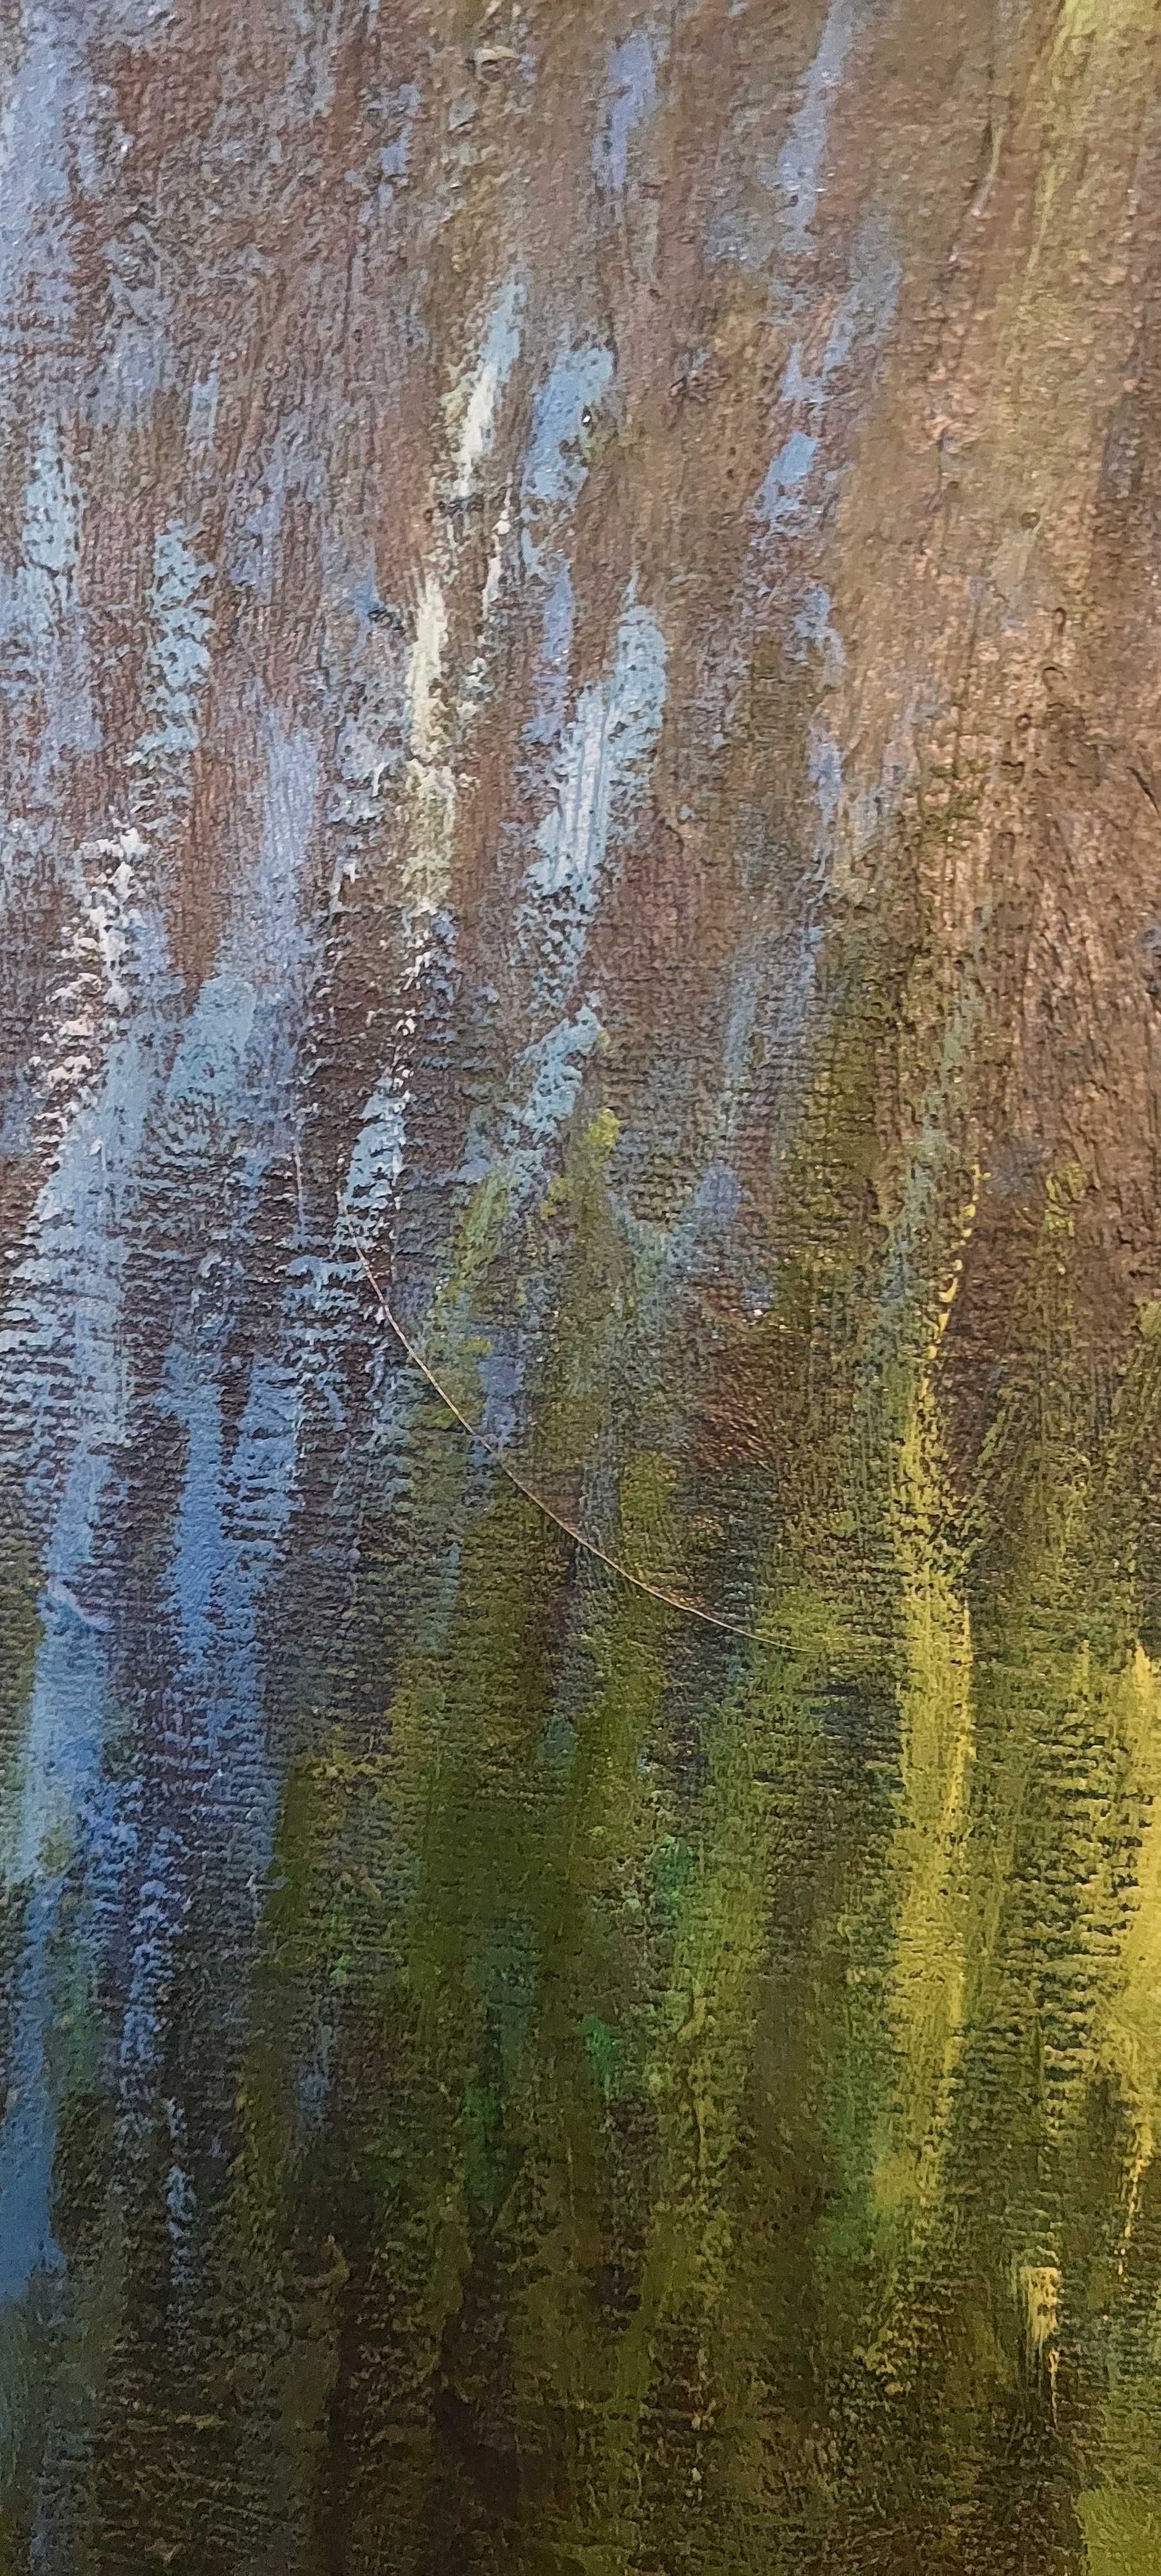 Obraz olejny na płótnie Claude Monet - Nenufary w Oranżerii - kopia